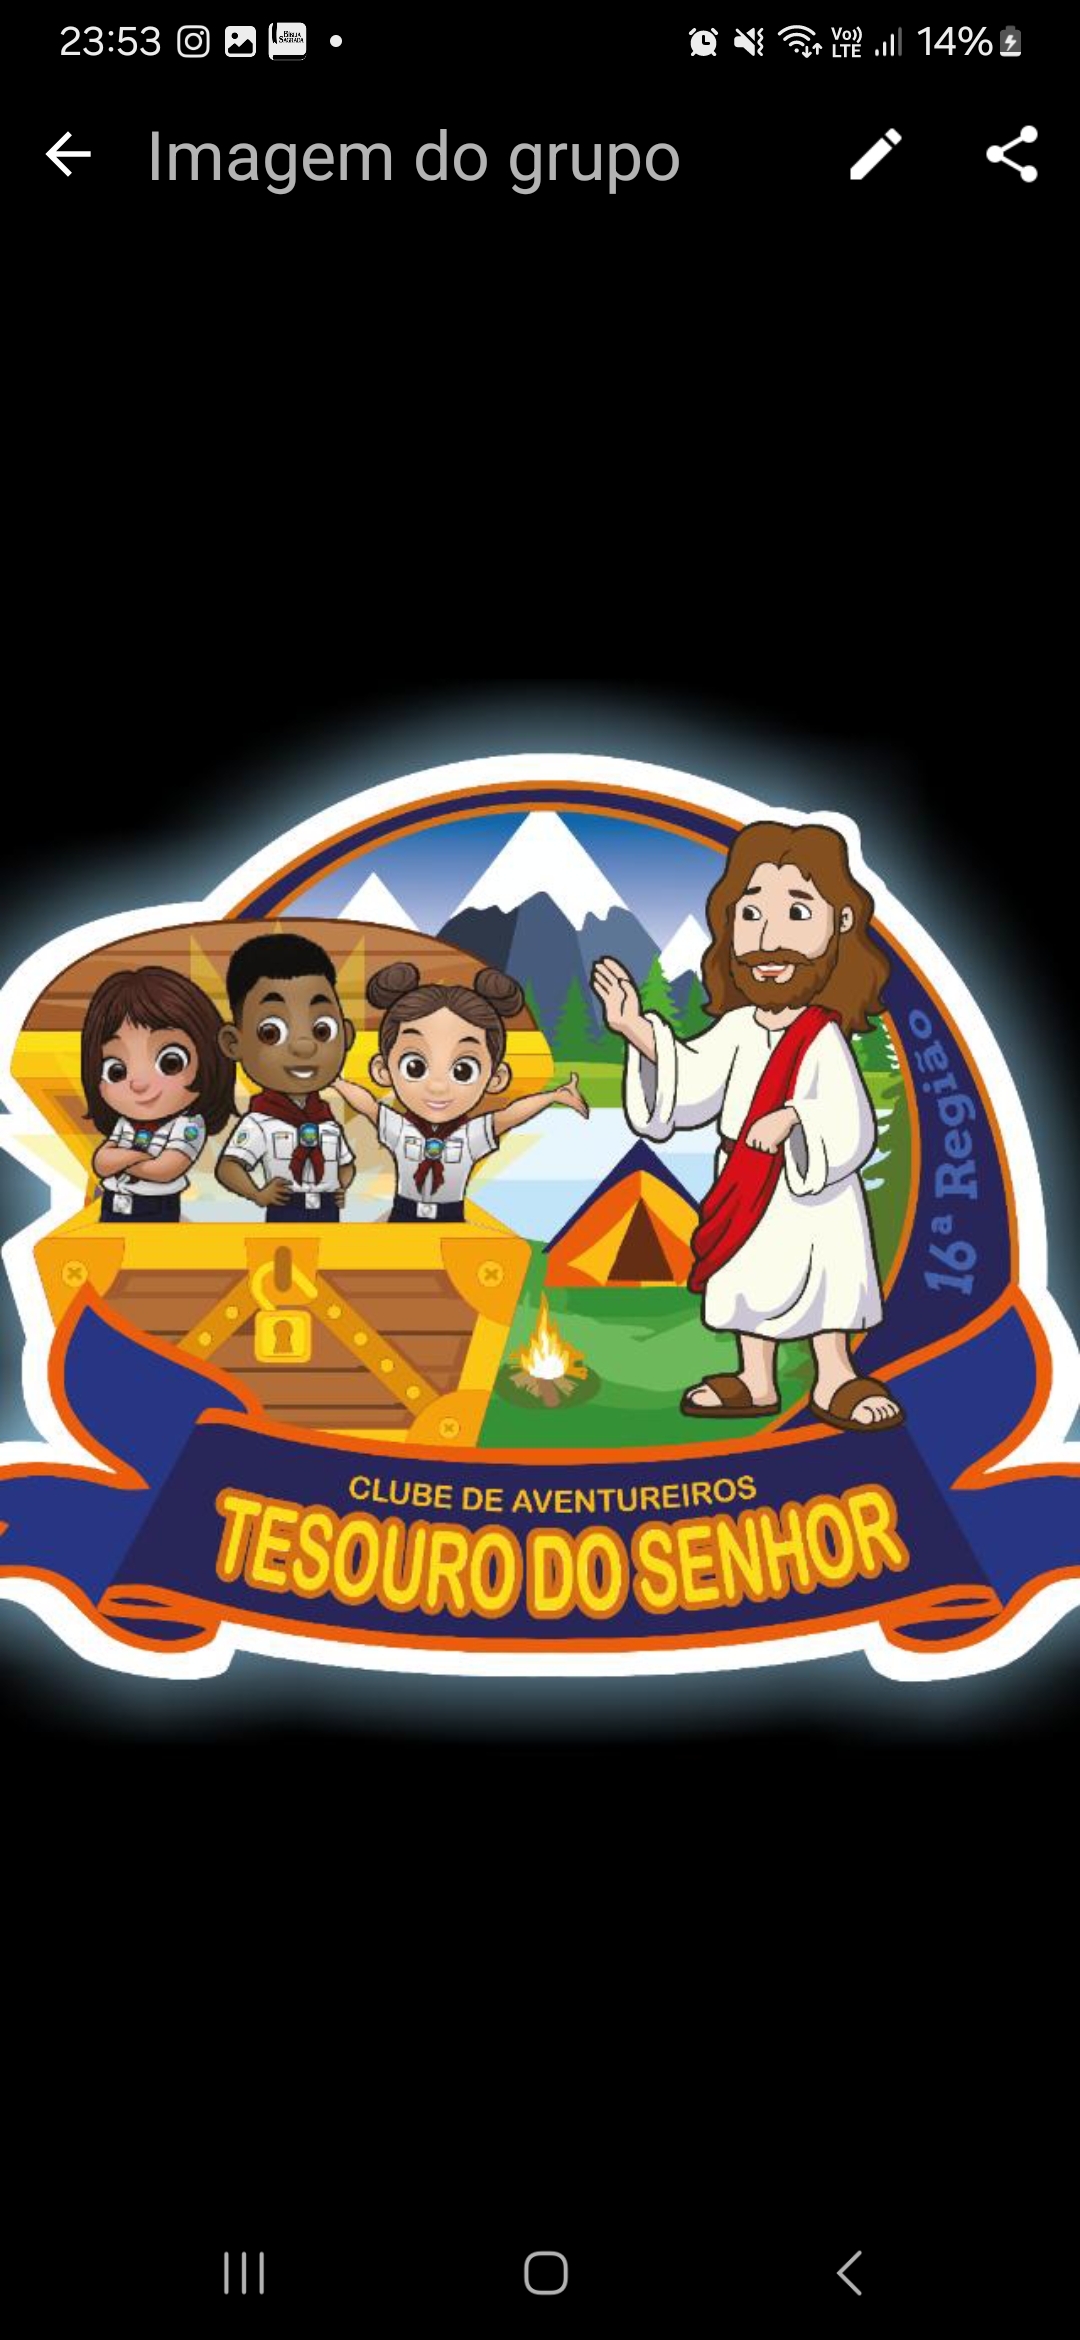 TESOURO DO SENHOR